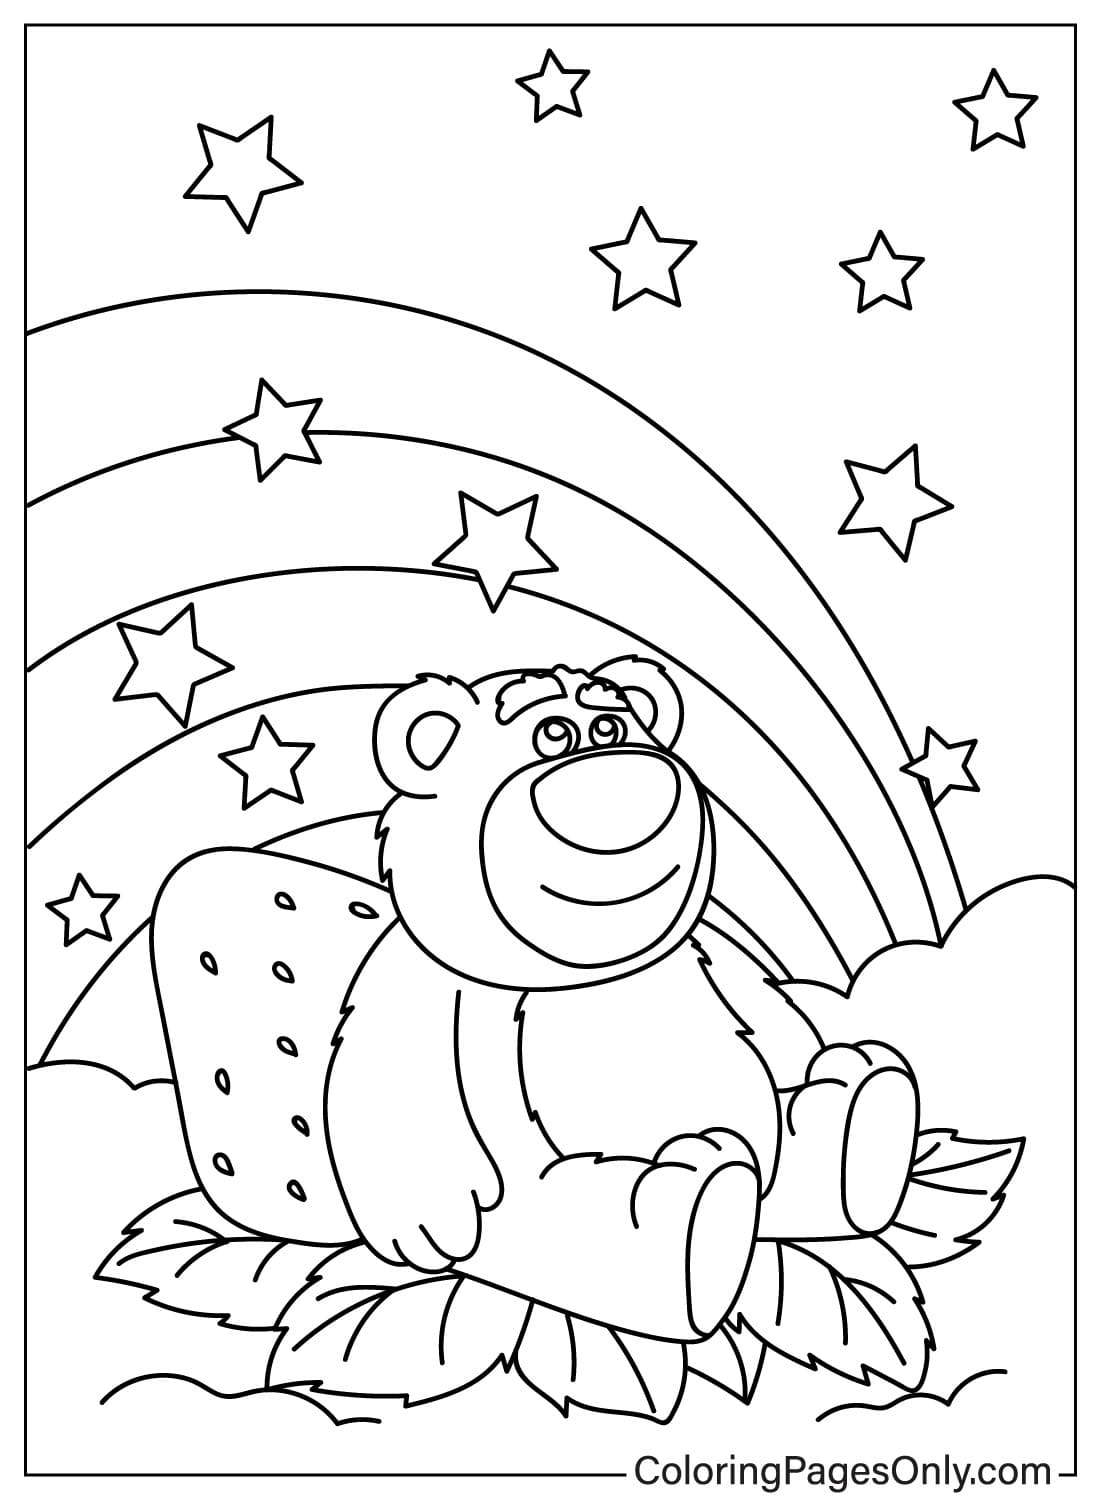 Página para colorear imprimible del oso Lotso del oso Lotso